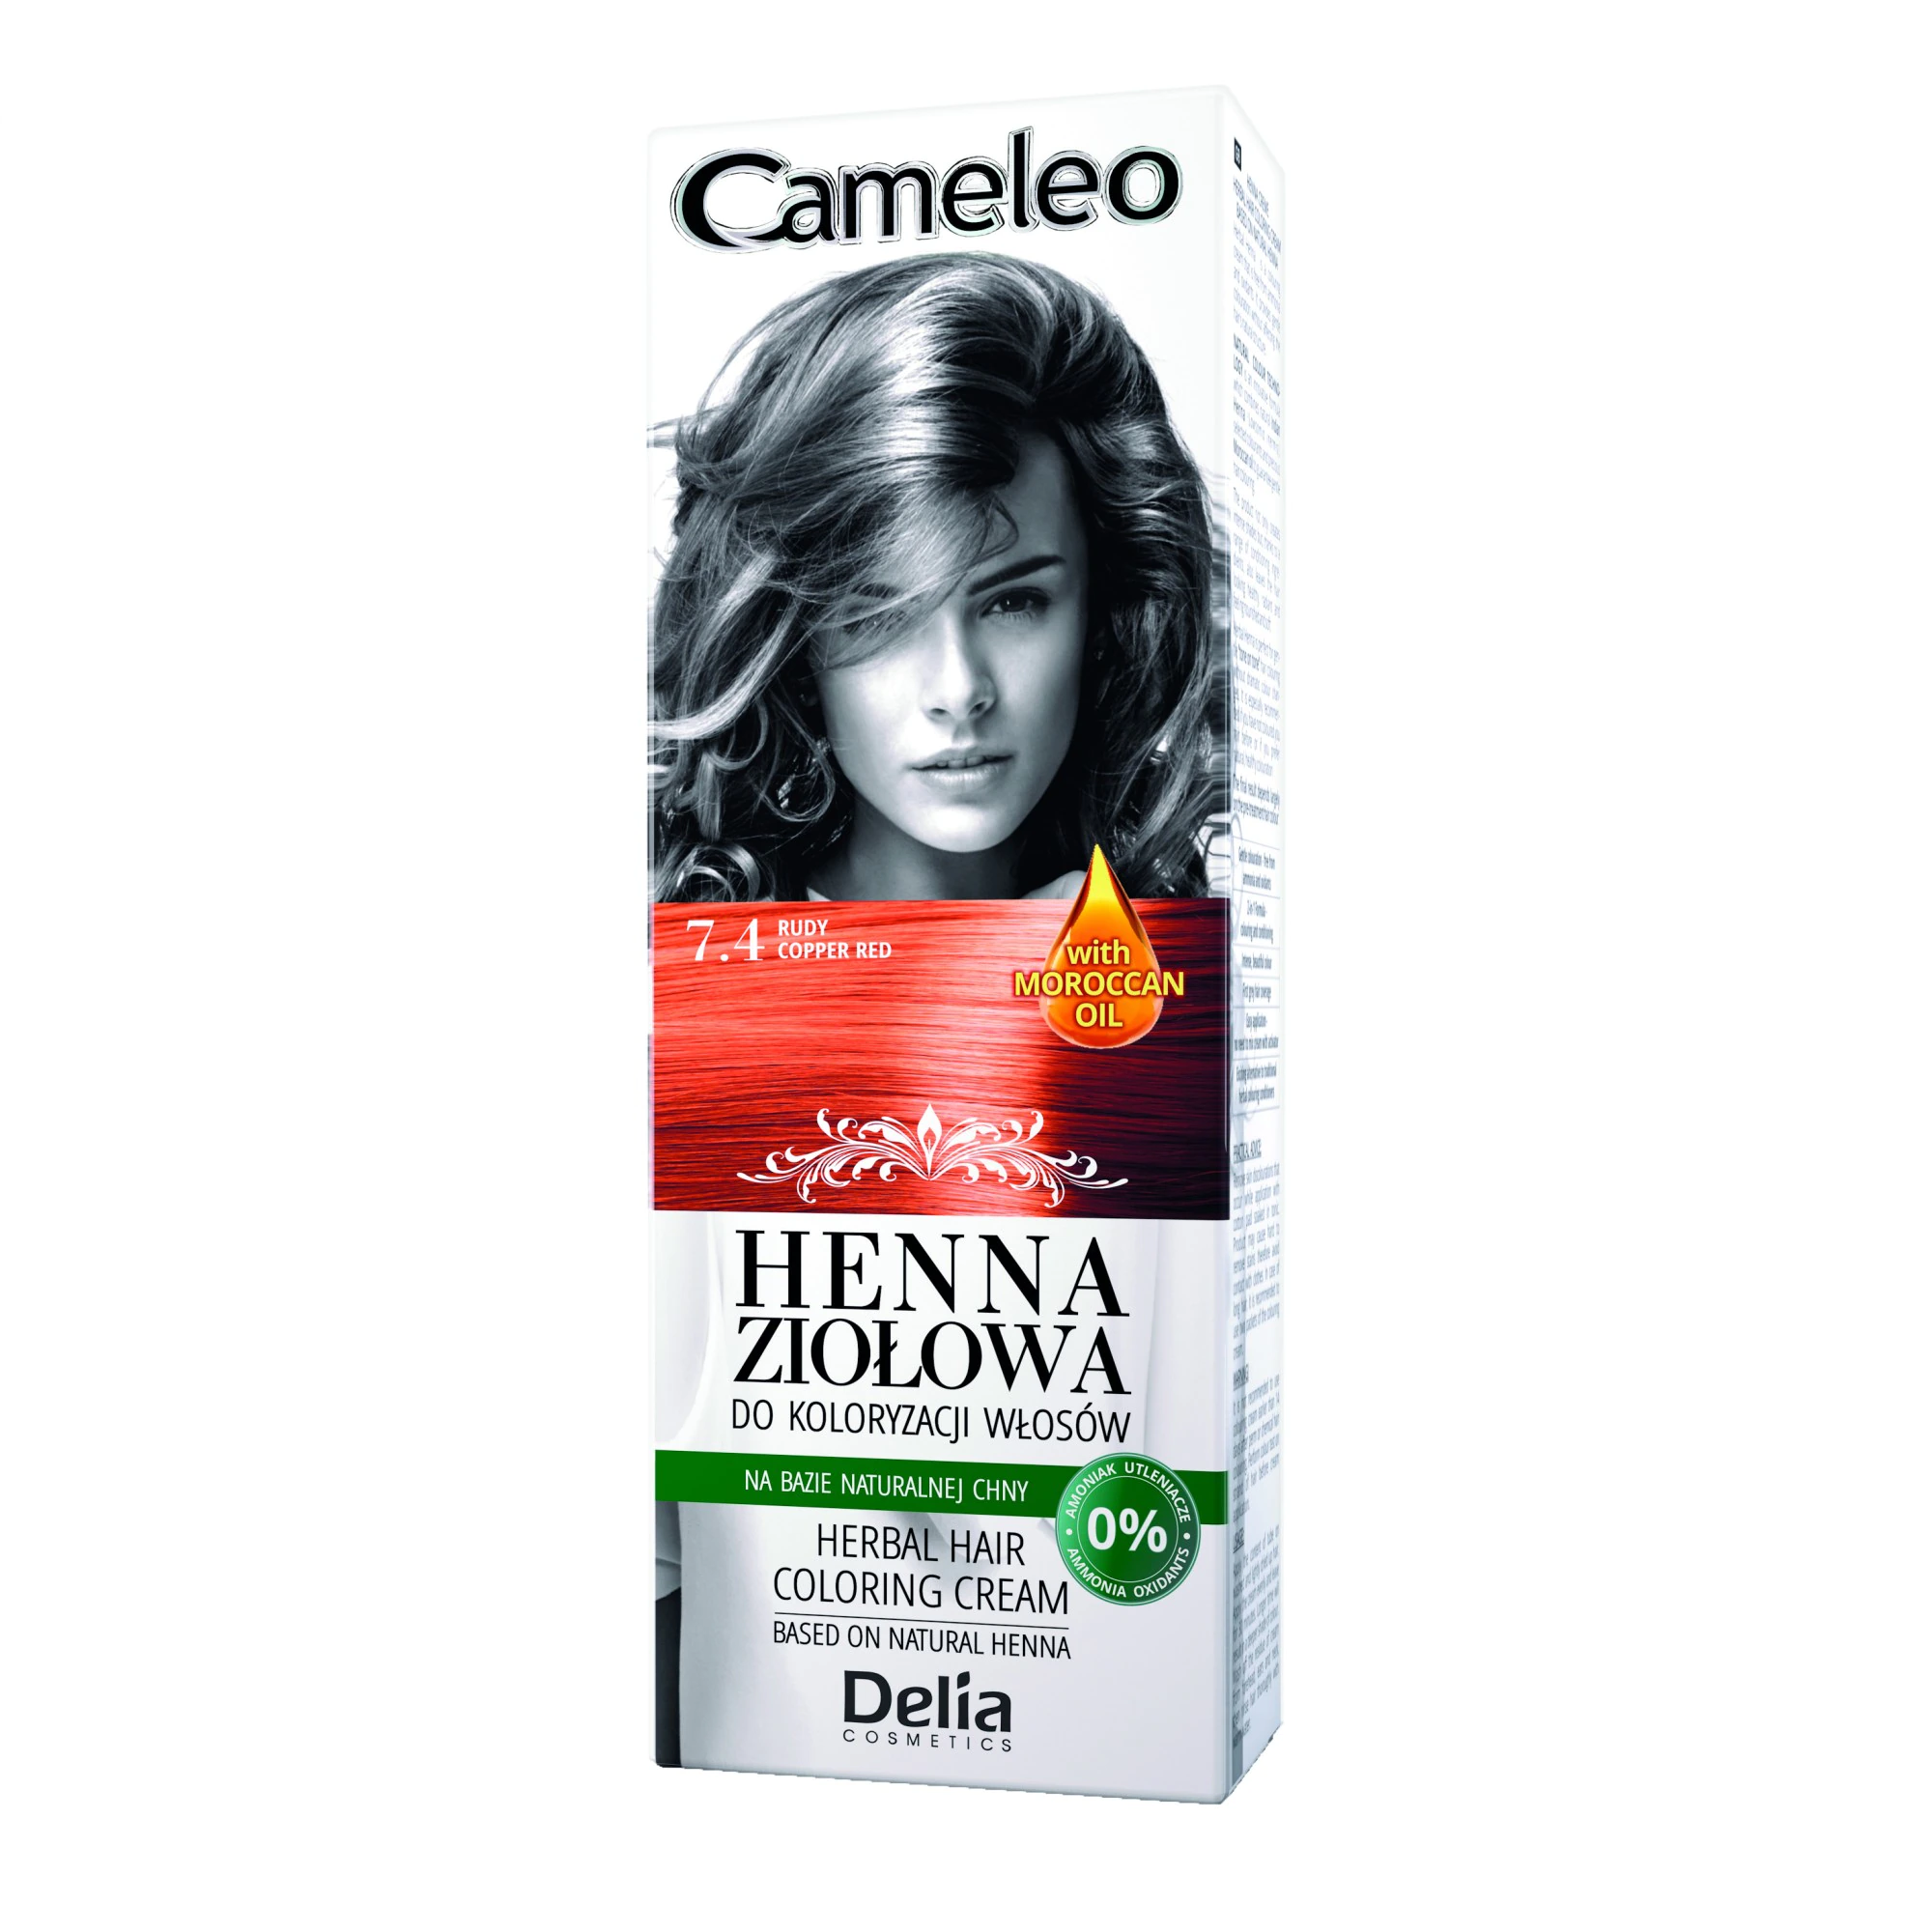 Vopsea de par Cameleo Henna, 7.4 Copper Red, 75 g, Delia Cosmetics